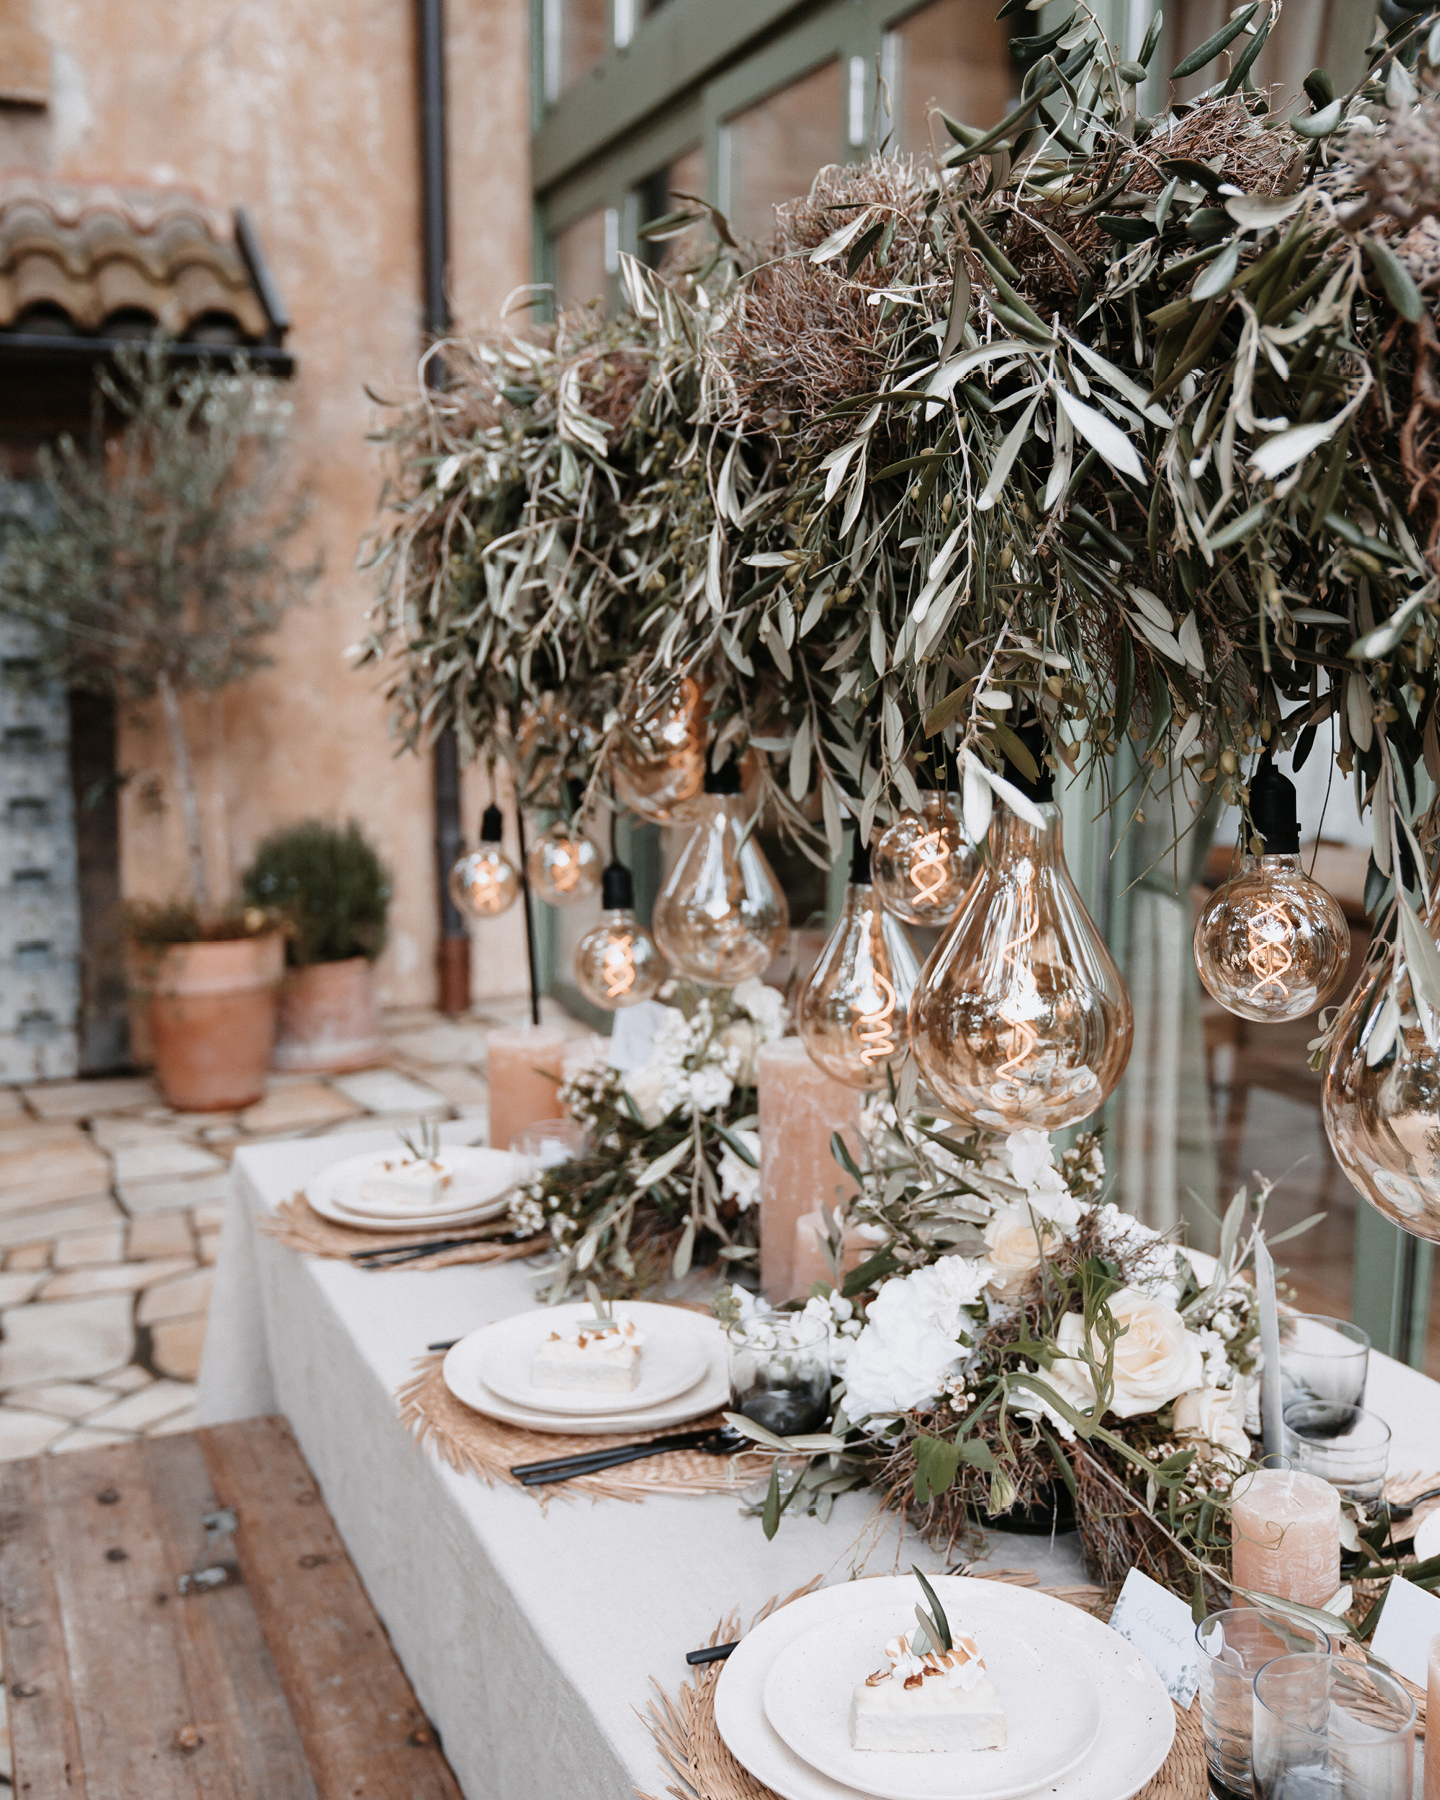 Die Hochzeitstafel ist dekoriert mit Euklayptuszweigen, weißen Blüten und einer Lichterkette im Boho Stil.